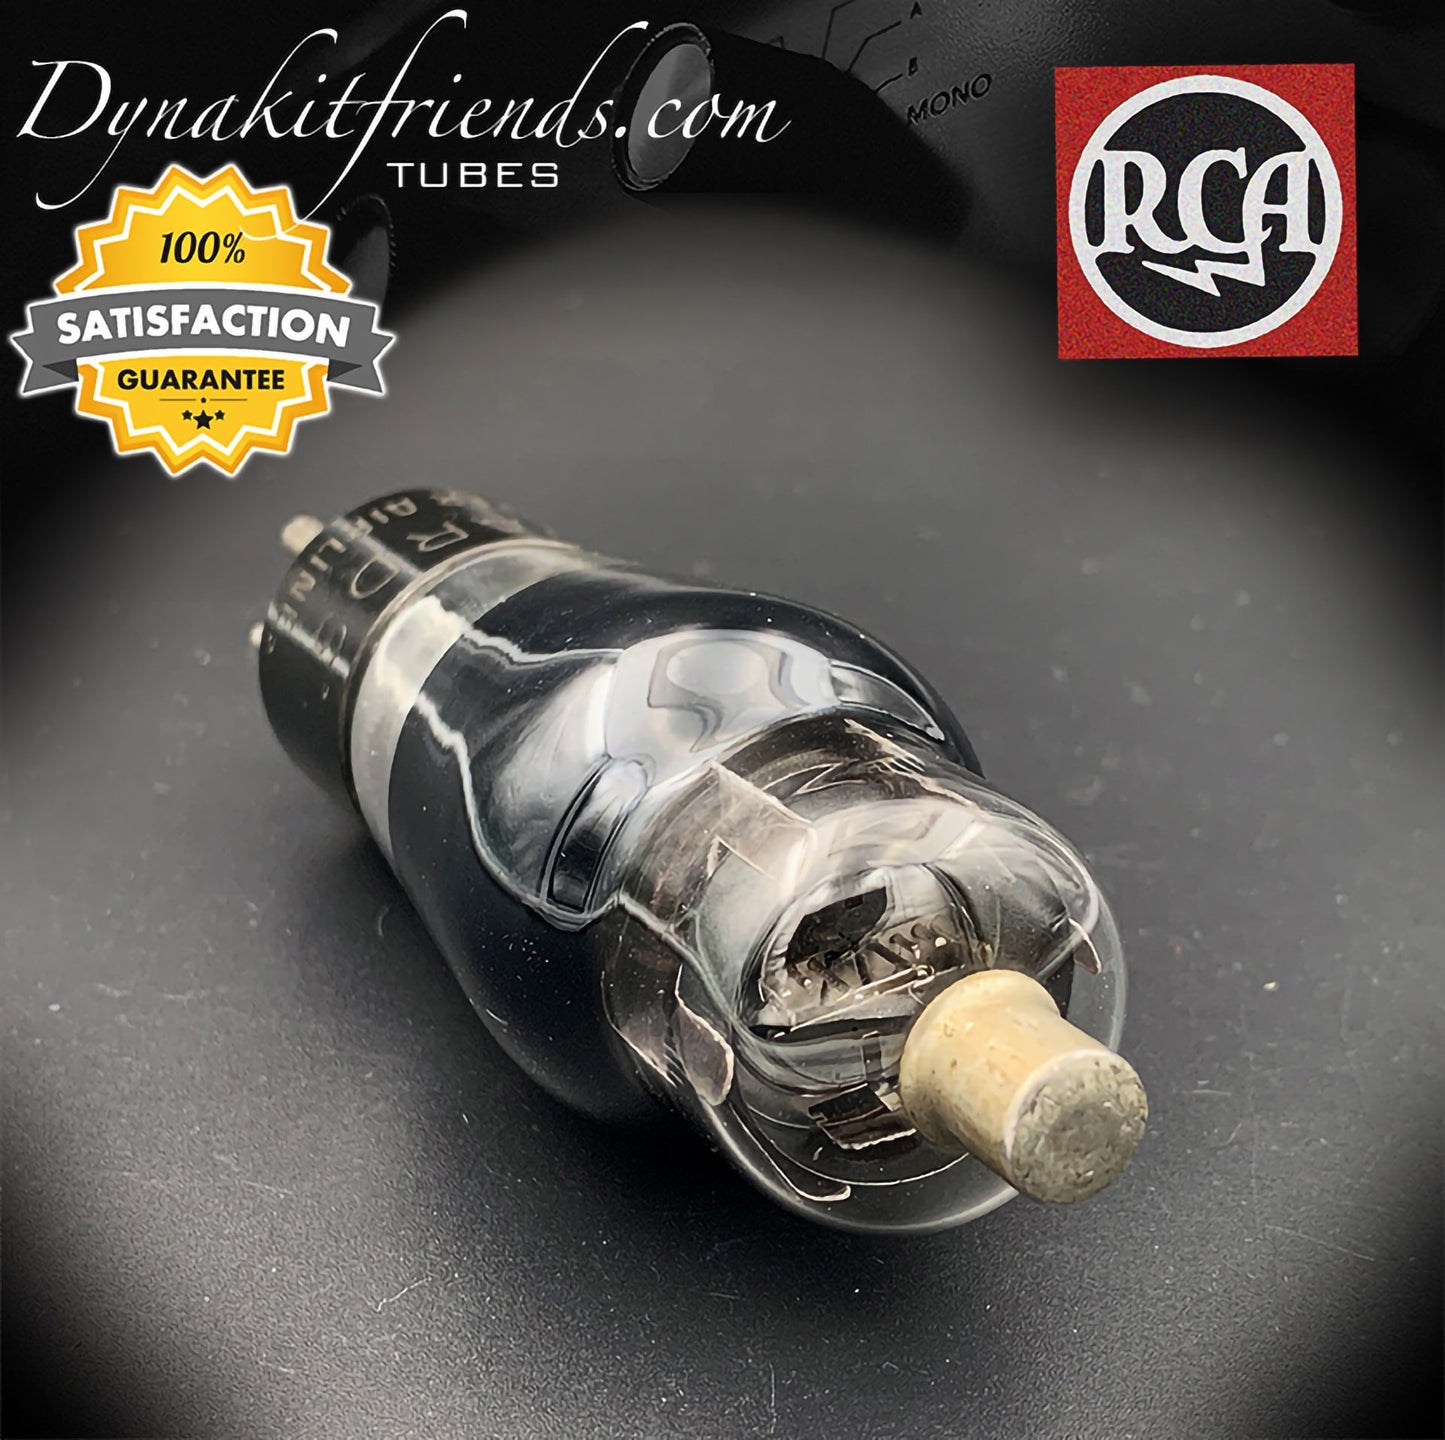 6C6 (CK108) RCA ST Flaschenetikett Wards Super AirLines Graphitglas, getestete Vintage-Röhre